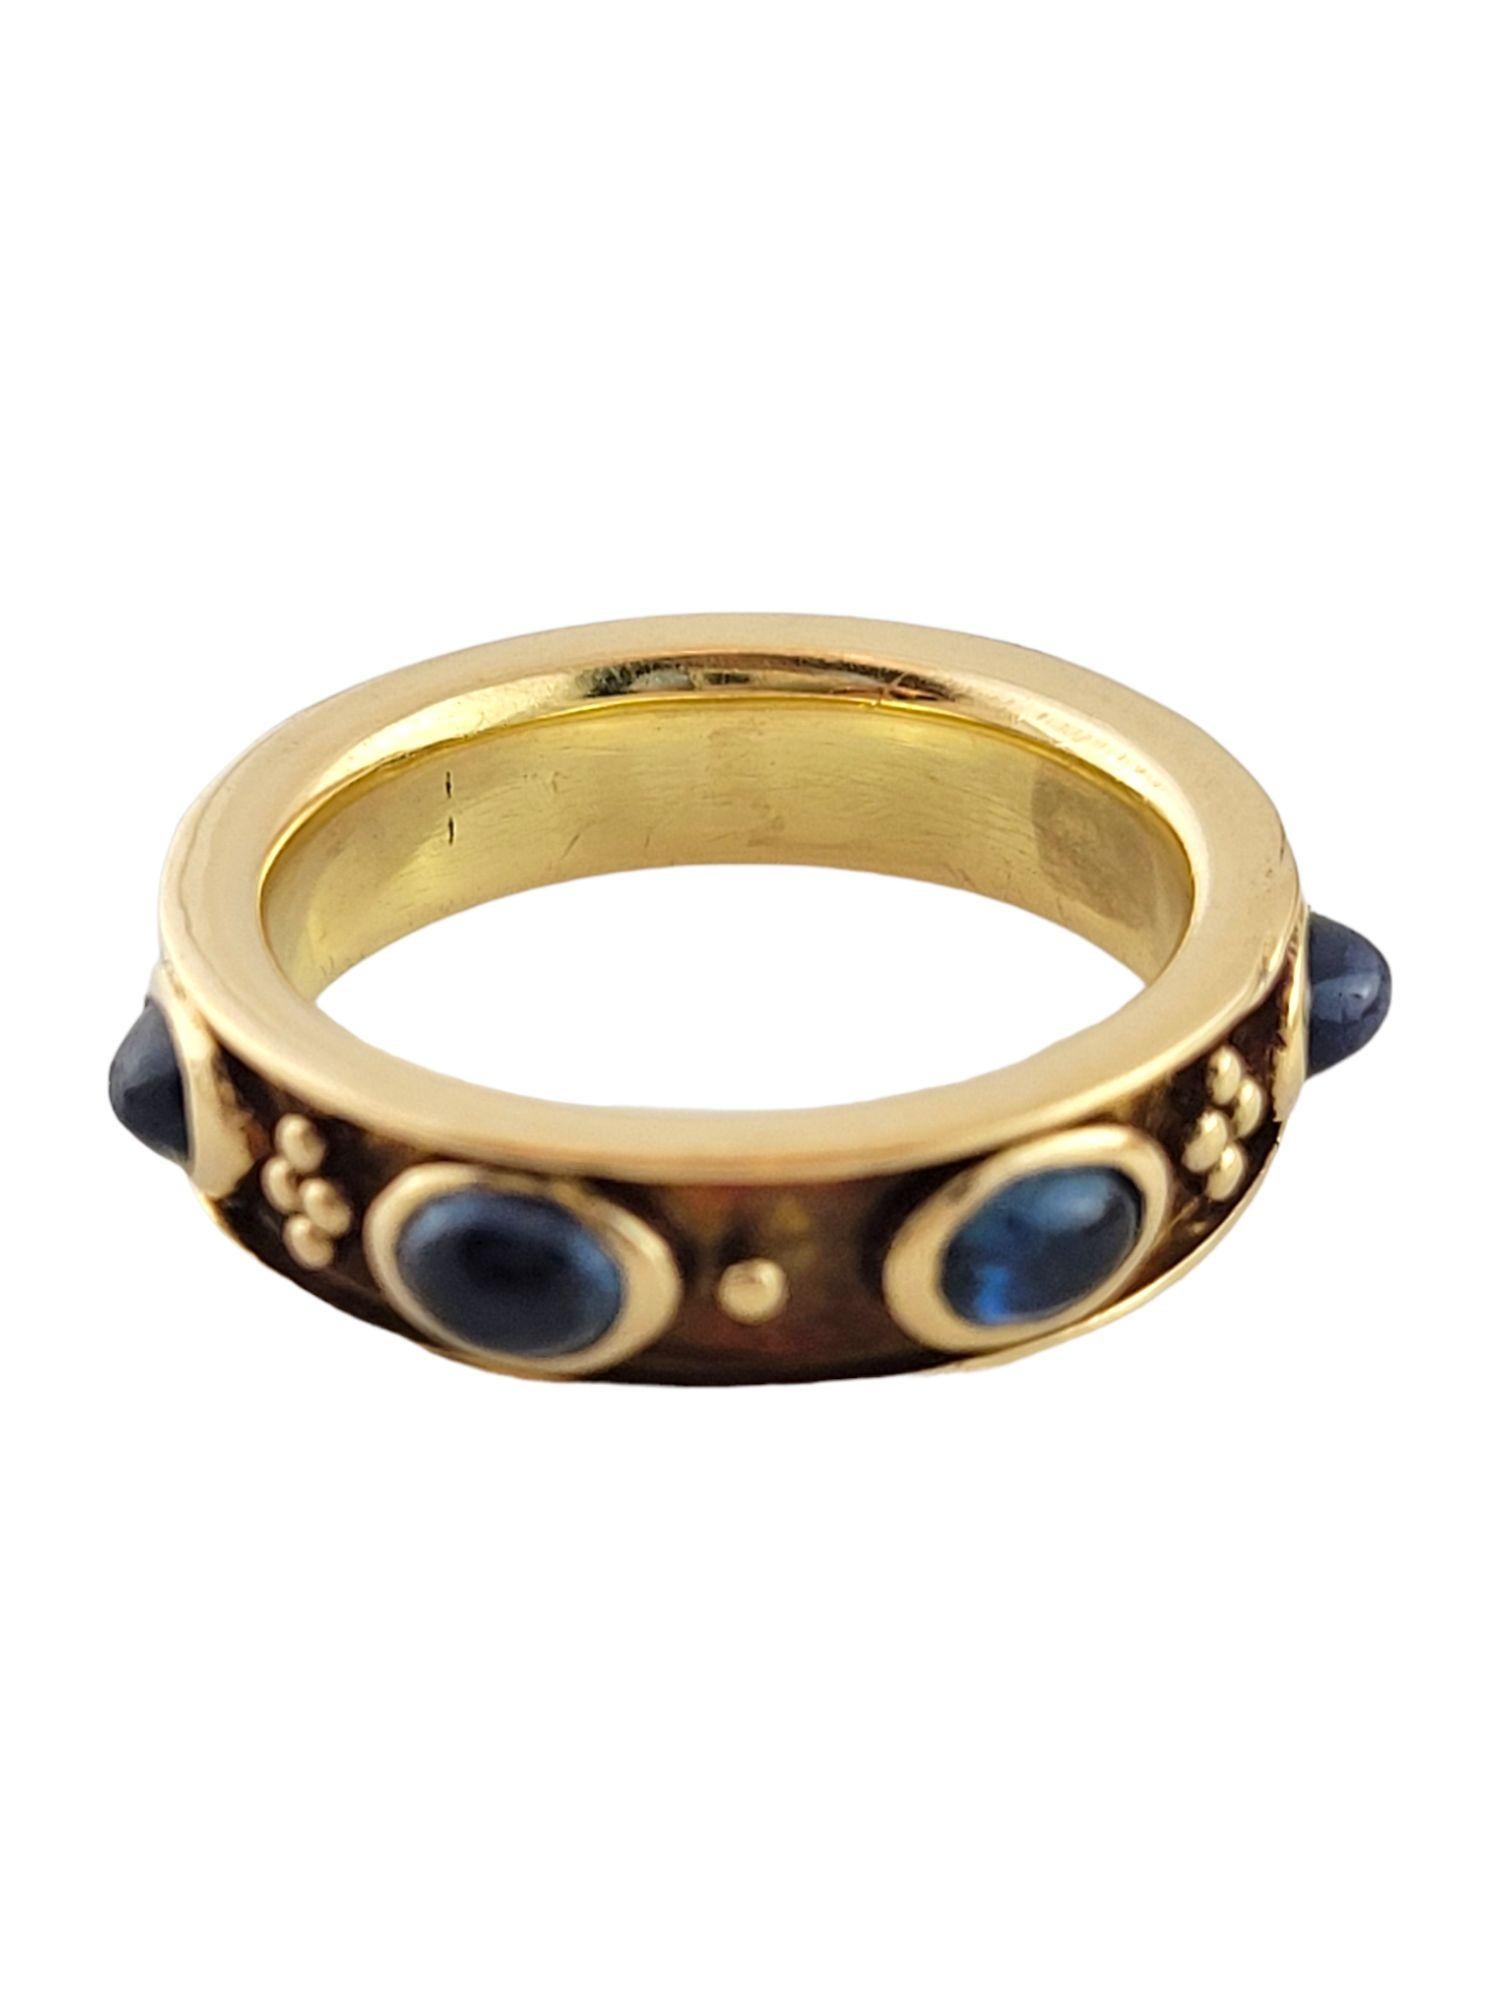 Sieben wunderschöne blaue Saphire, eingefasst in einen schönen Ring aus 18 Karat Gelbgold!

2,24cts von natürlichen blauen Saphiren

mittlere leicht grünlich-blaue Farbe, guter Schnitt

Ringgröße: 6.75

Schaft: 5,1 mm

Gewicht: 8,44 g/ 5,4